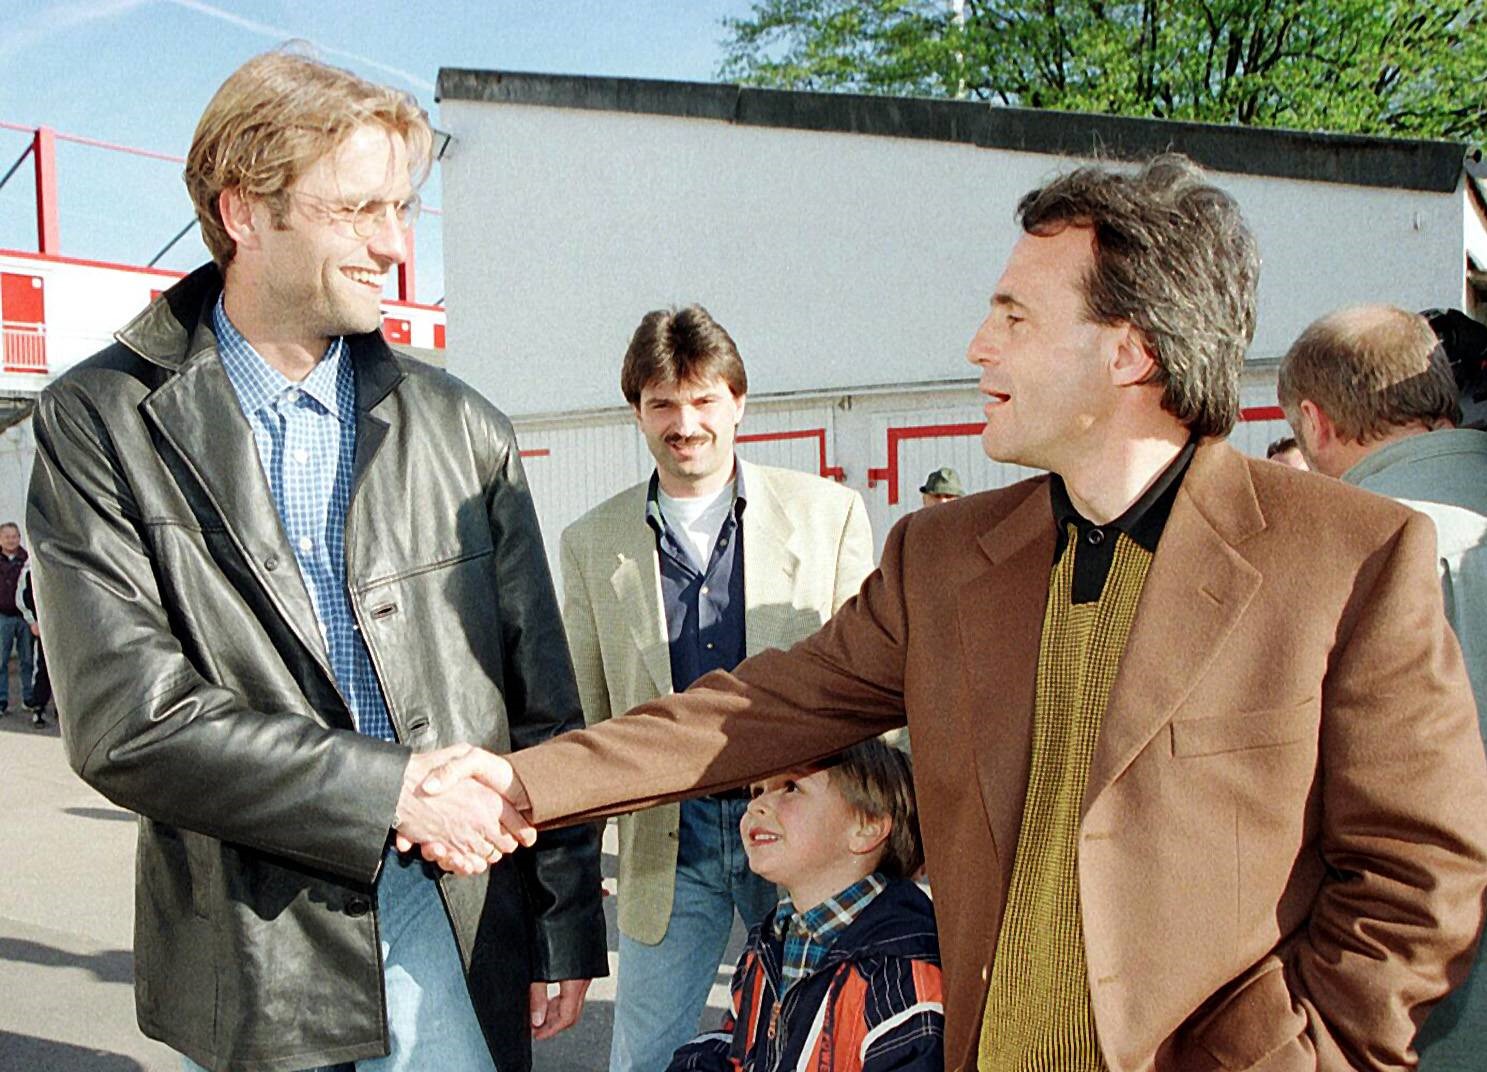 "Mit Wolfgang fing tatsächlich alles an": Jürgen Klopp (li.) mit seinem Mentor und früheren Trainer Wolfgang Frank.